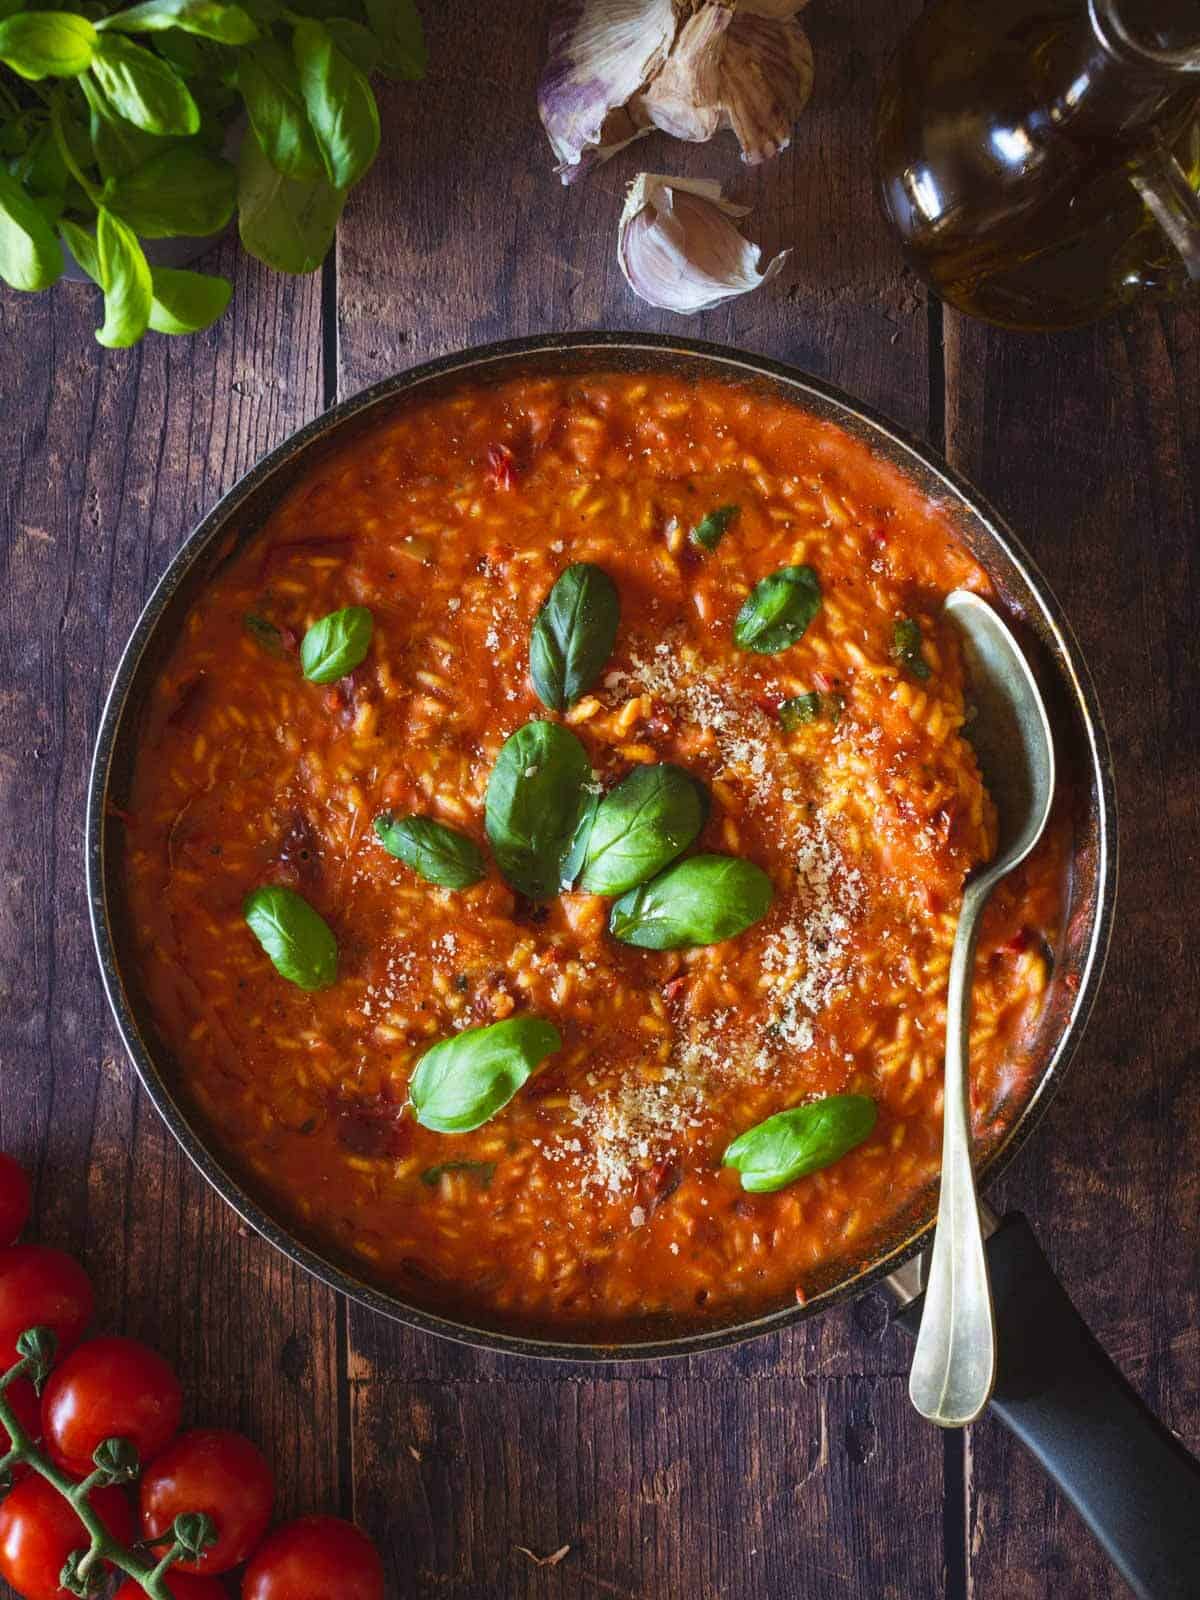 enjoy your creamy sun-dried tomato risotto recipe